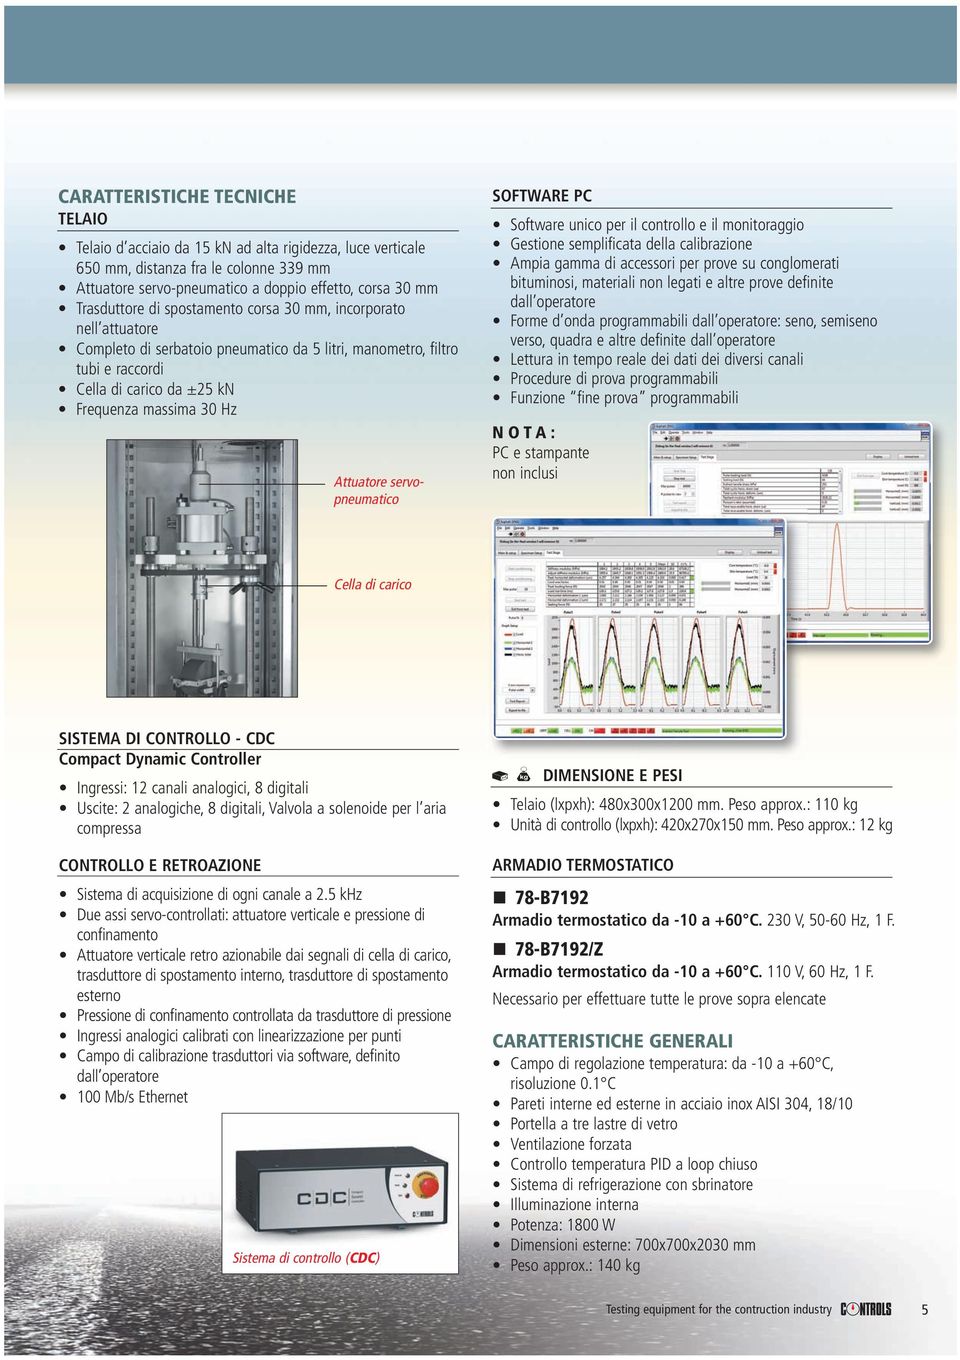 servopneumatico SOFTWARE PC Software unico per il controllo e il monitoraggio Gestione semplificata della calibrazione Ampia gamma di accessori per prove su conglomerati bituminosi, materiali non